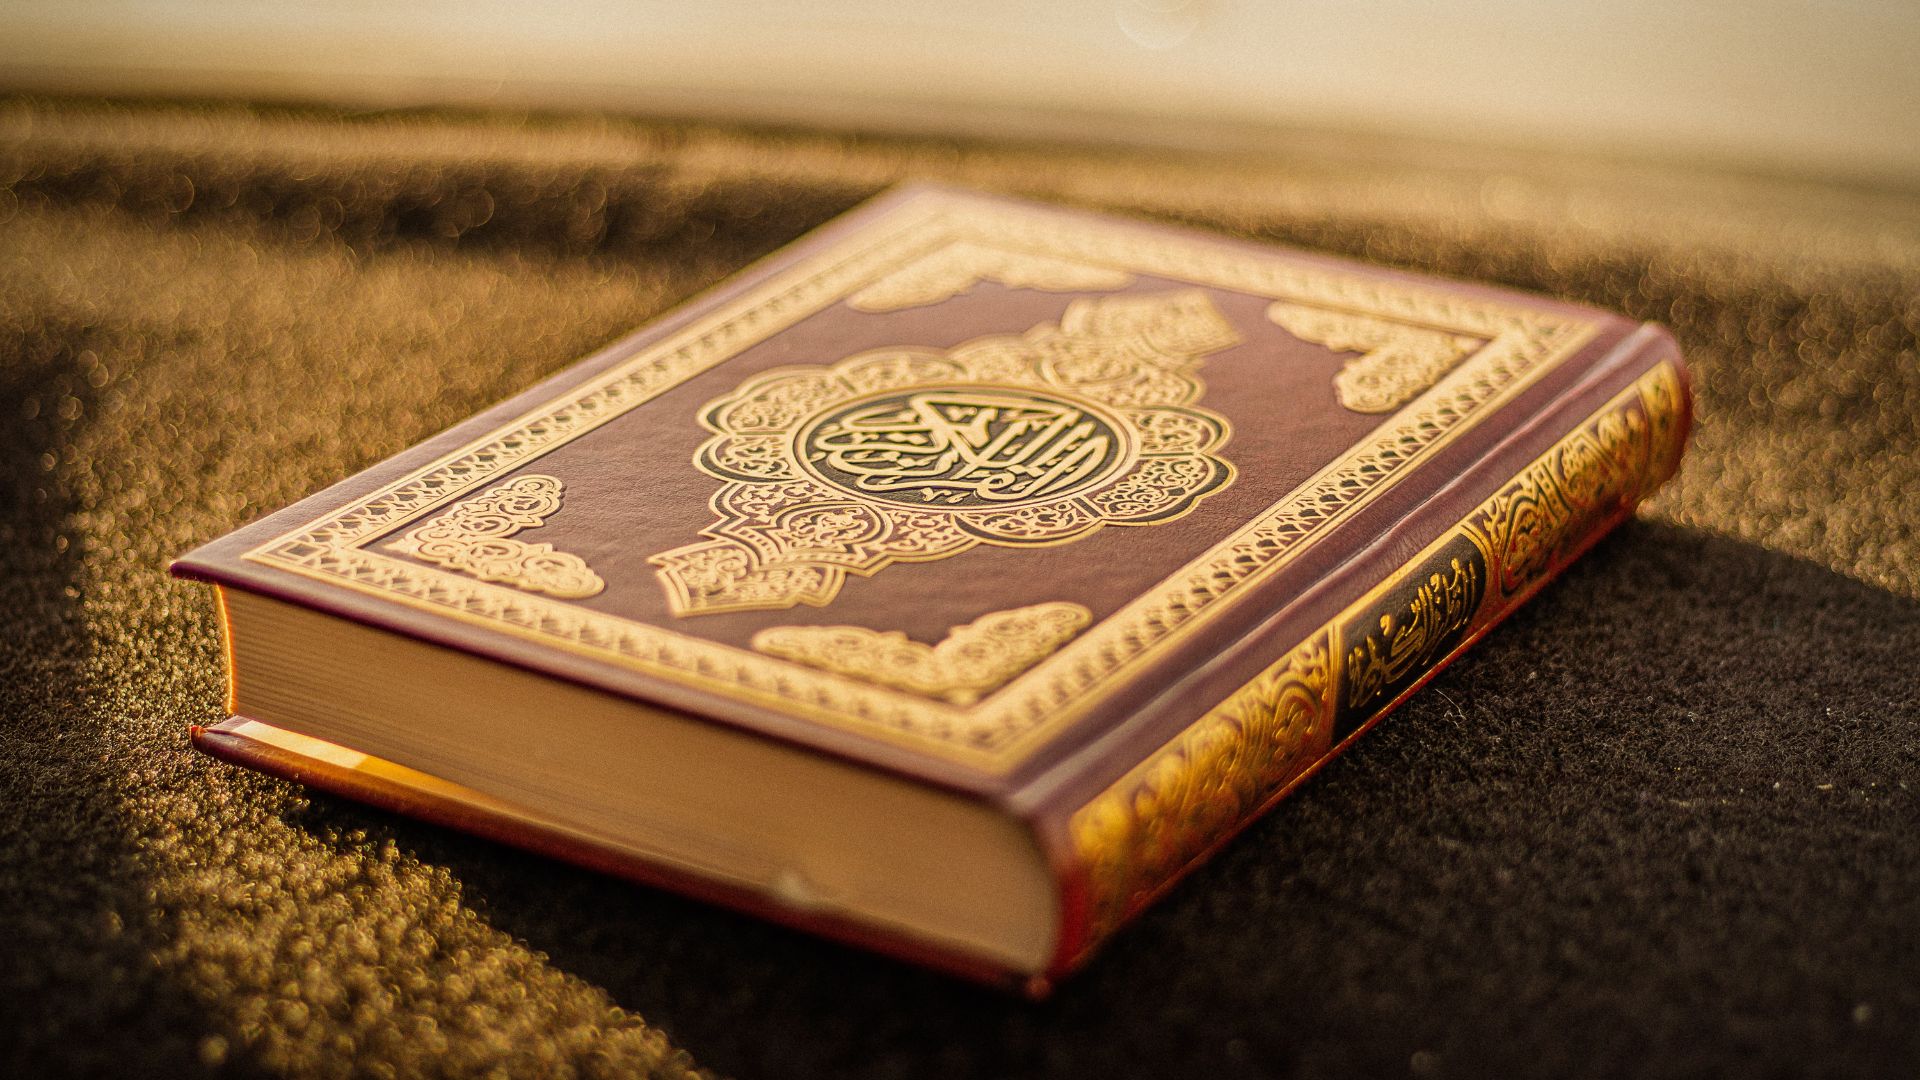 Cómo mejorar tu relación con el Corán